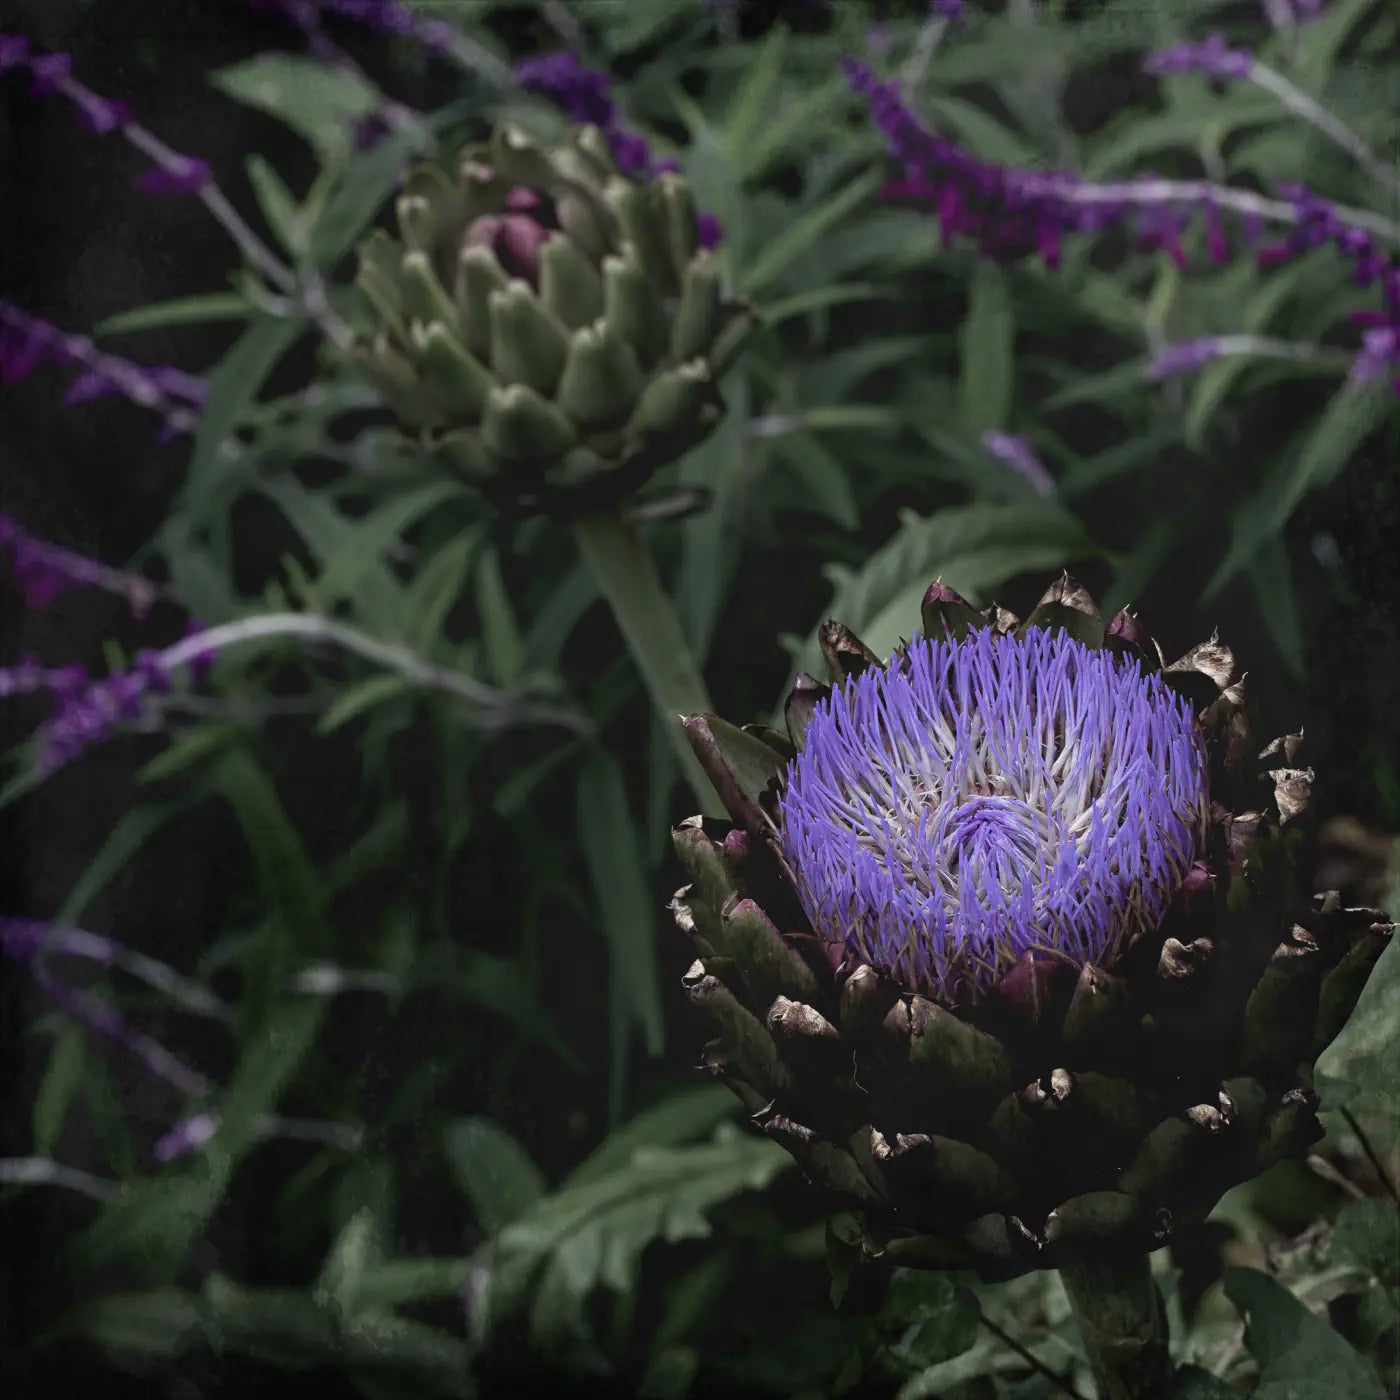 fine-art photo of an artichoke flower